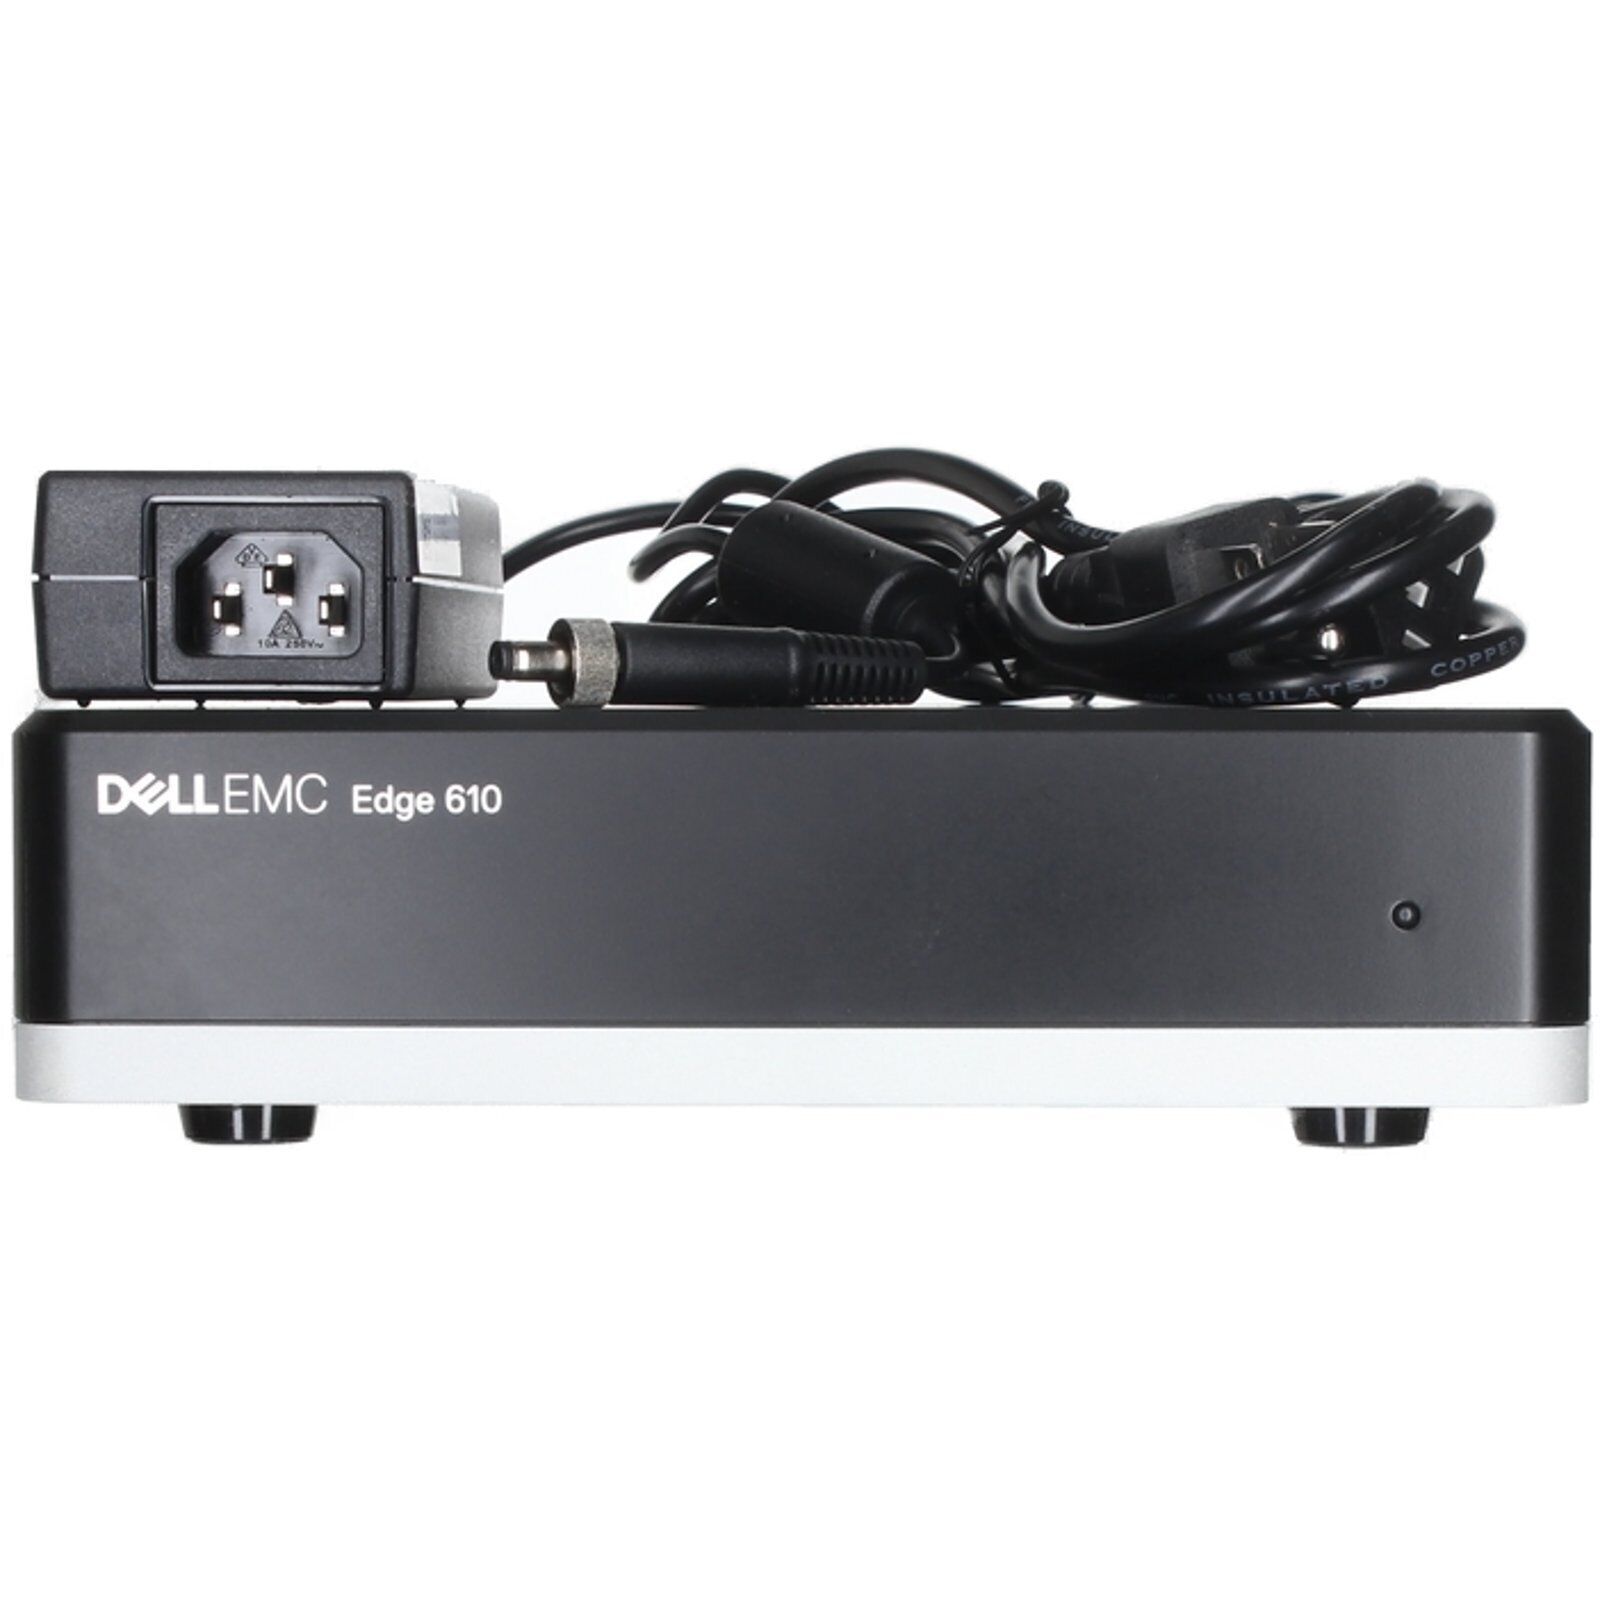 Dell EMC SD-WAN EDGE 610 2C 4GB 16GB eMMC 6P 1GbE 2P SFP Appliance